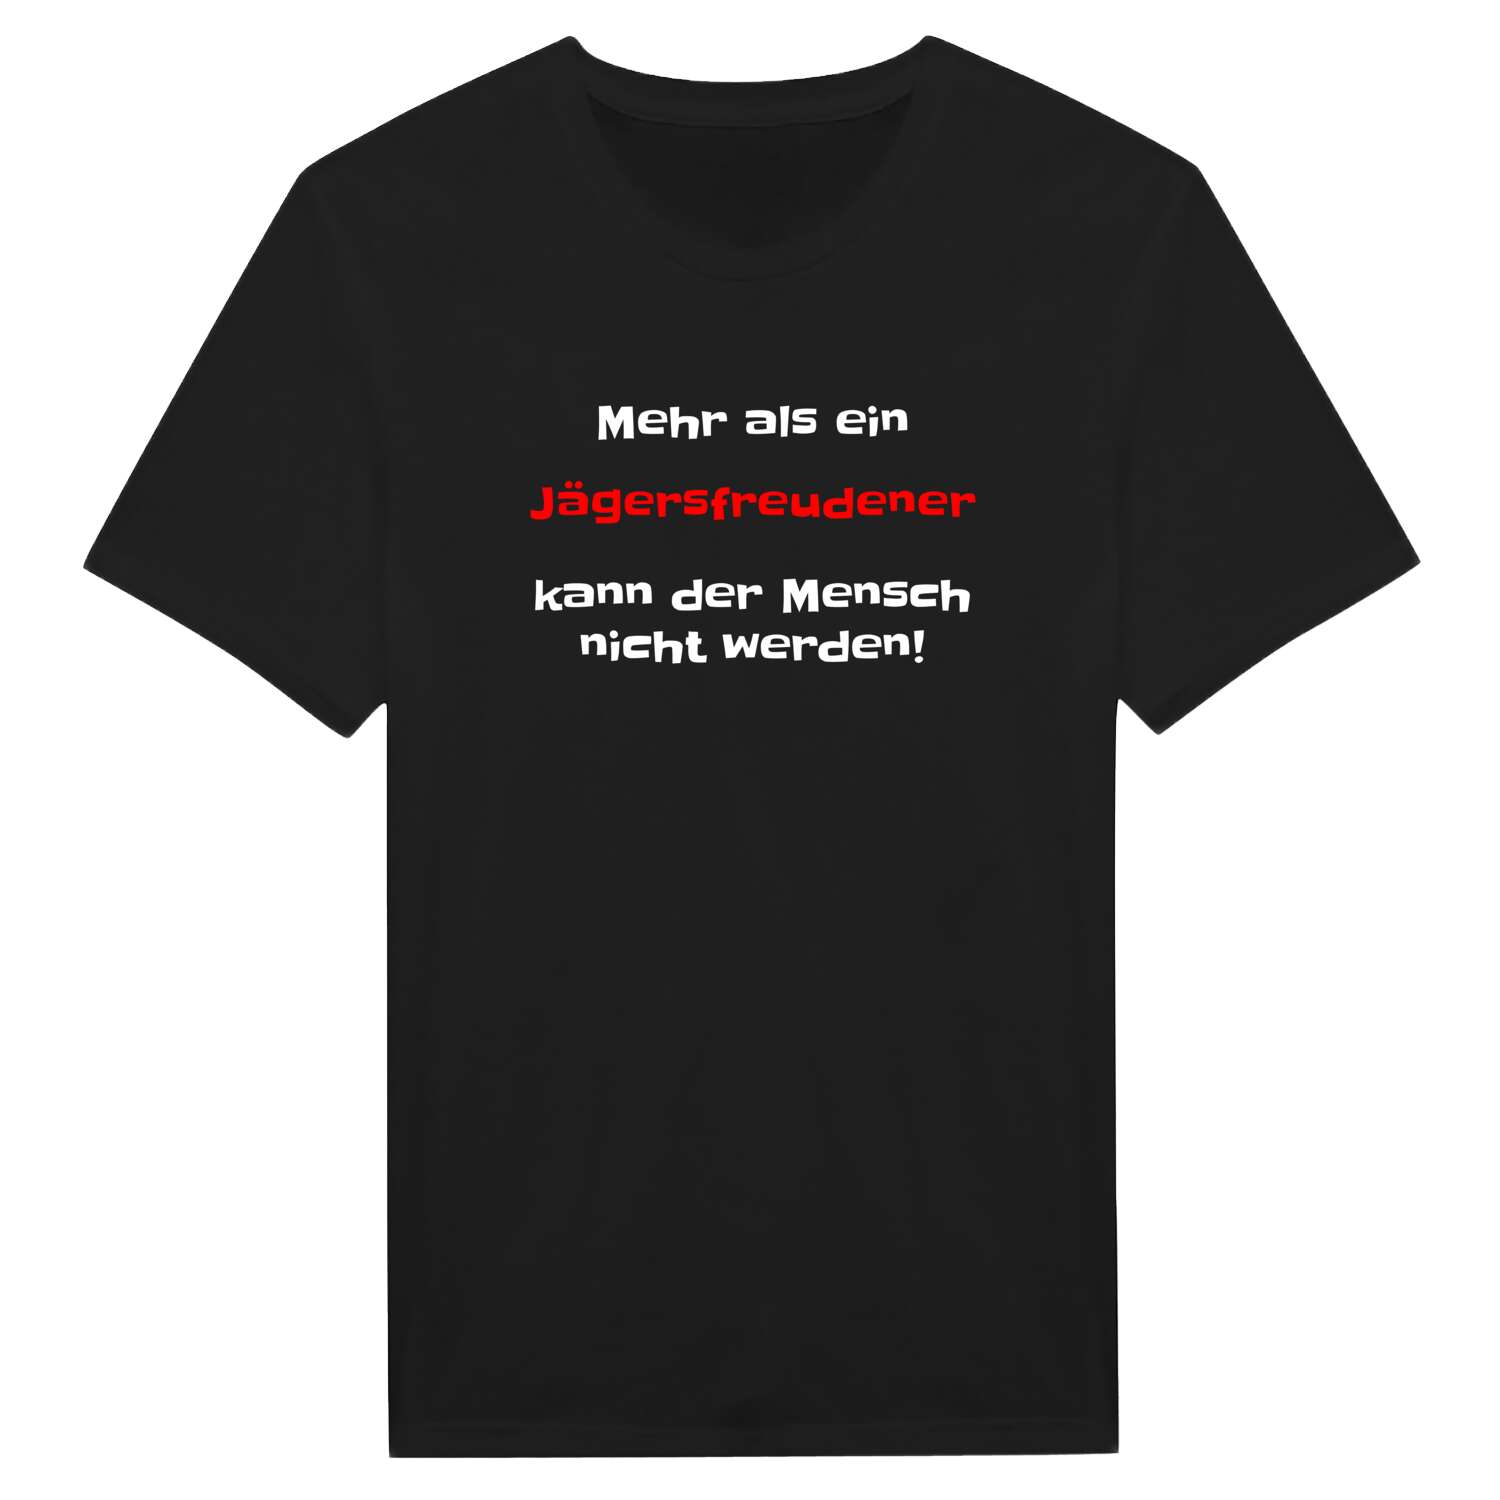 Jägersfreude T-Shirt »Mehr als ein«